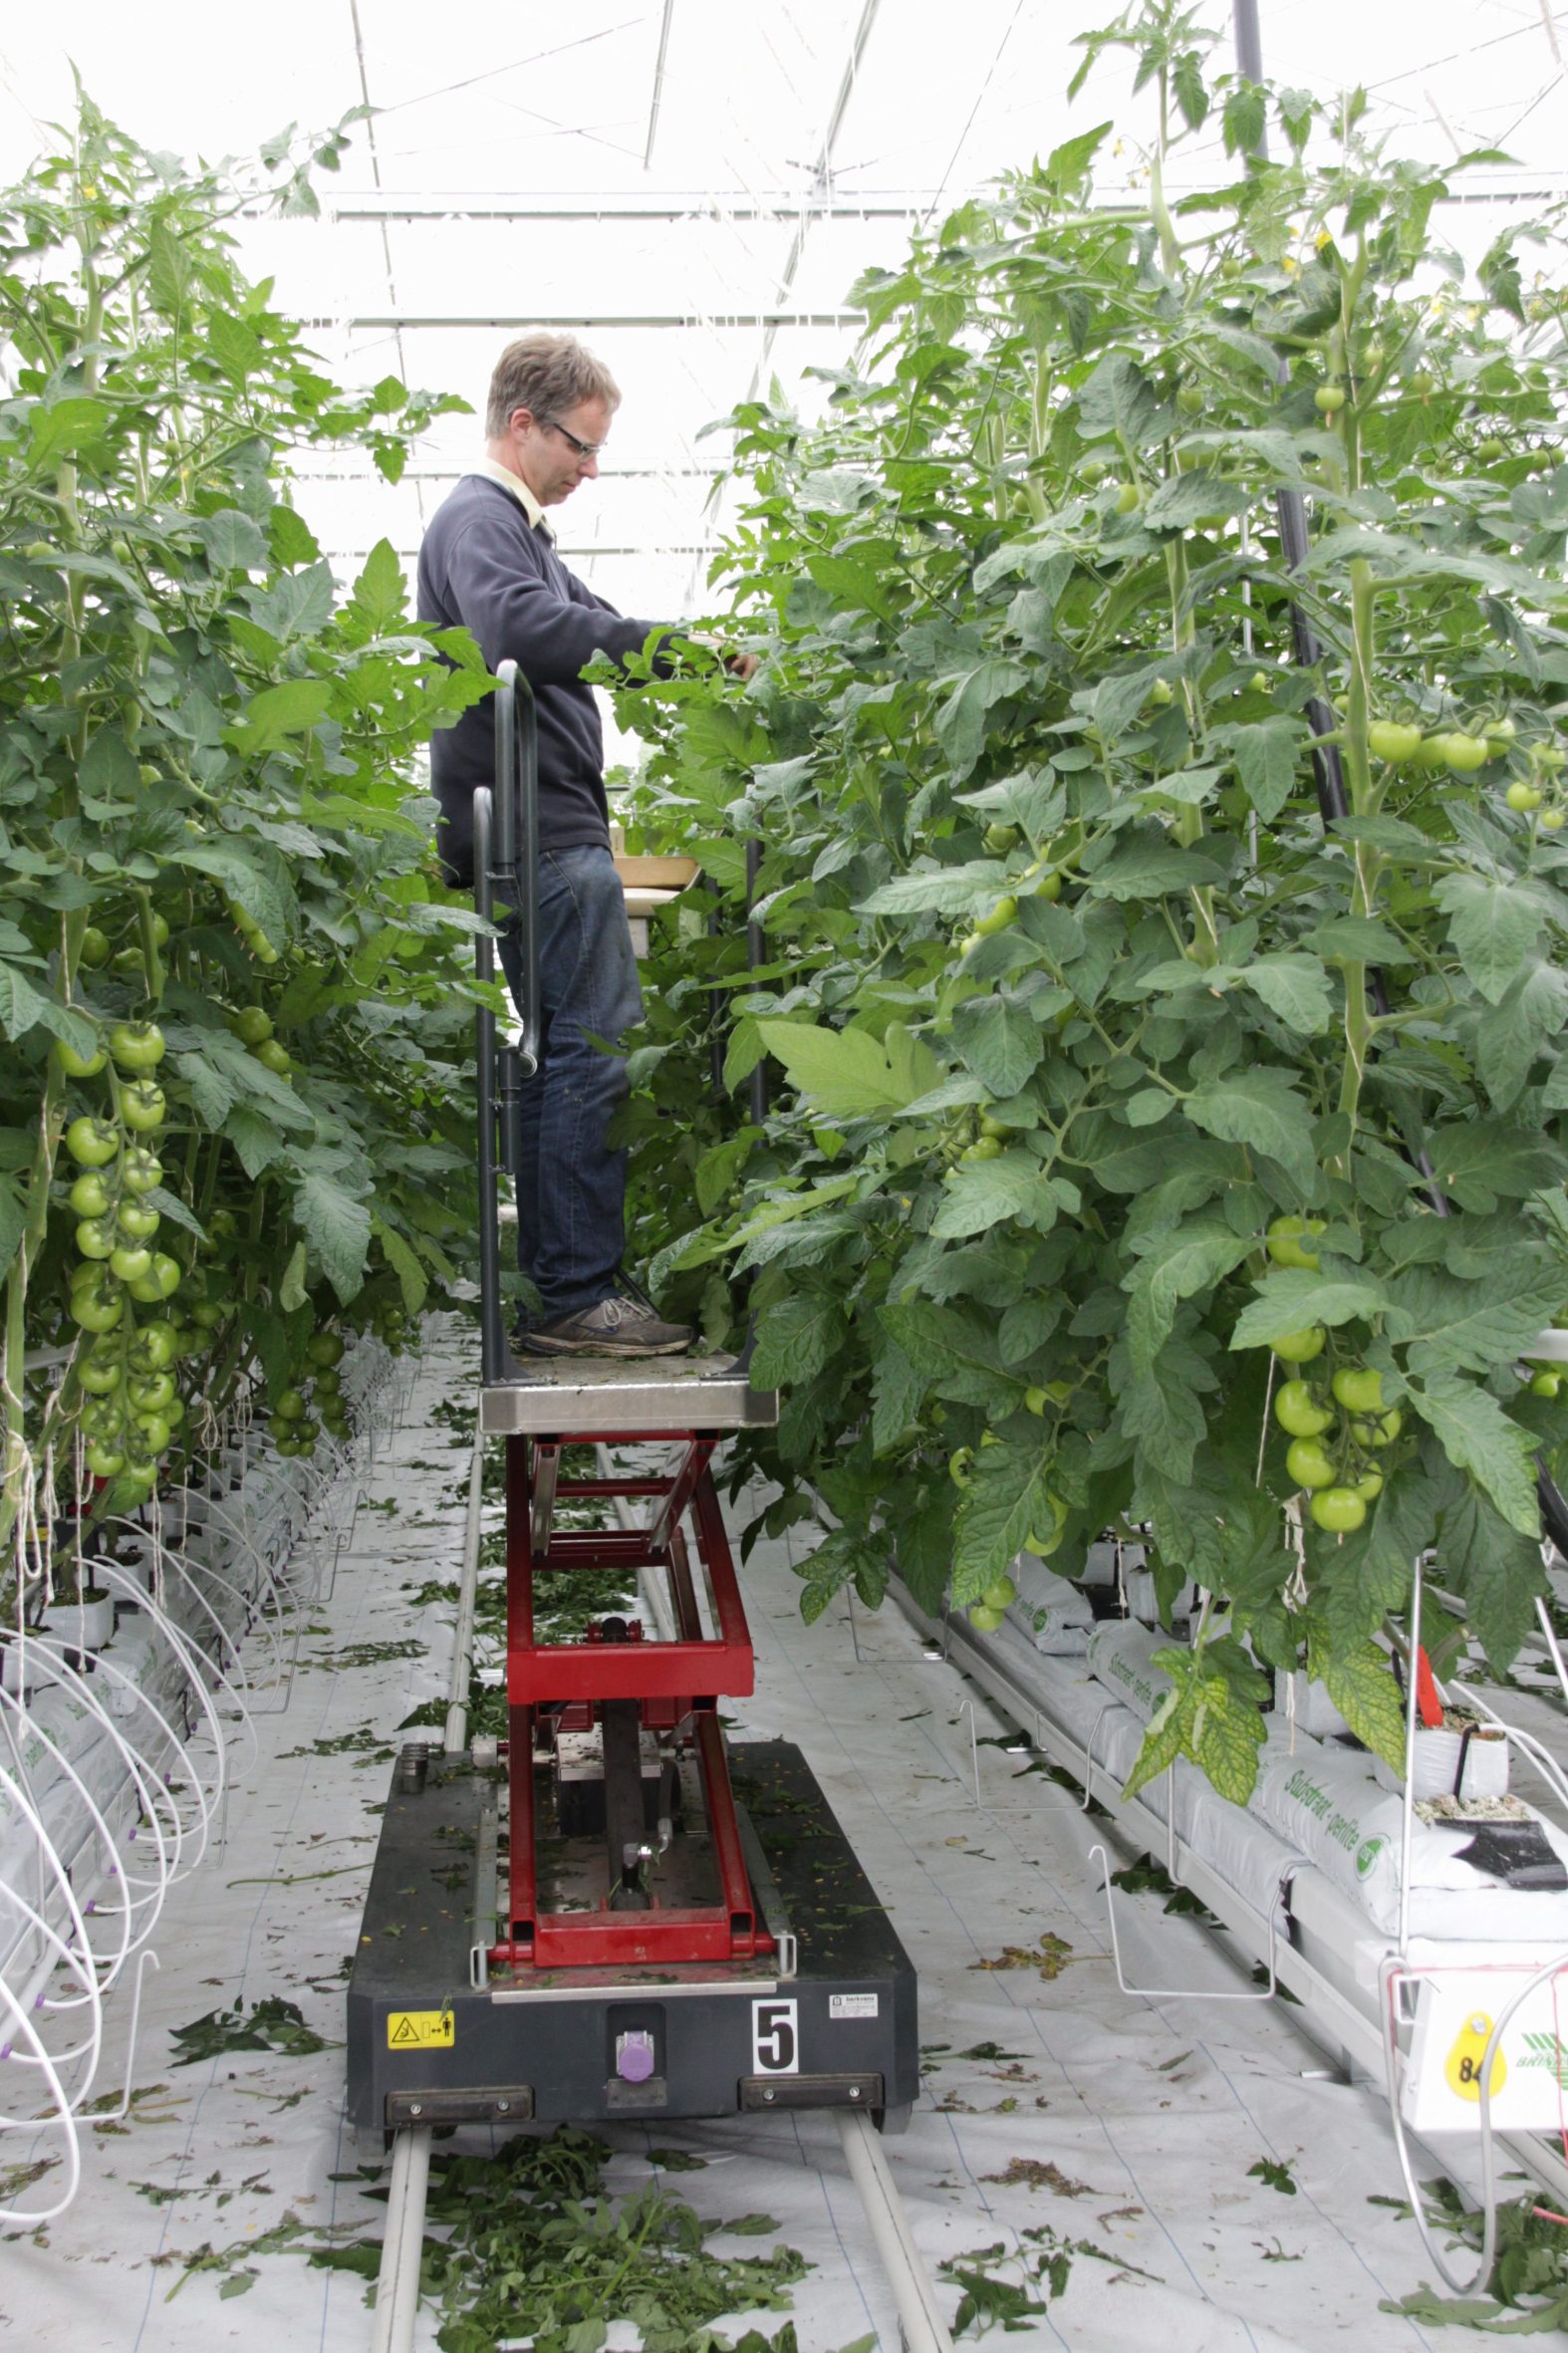 Mit gutem Gefühl: Im Münsterland wird hochwertiges Gemüse angebaut